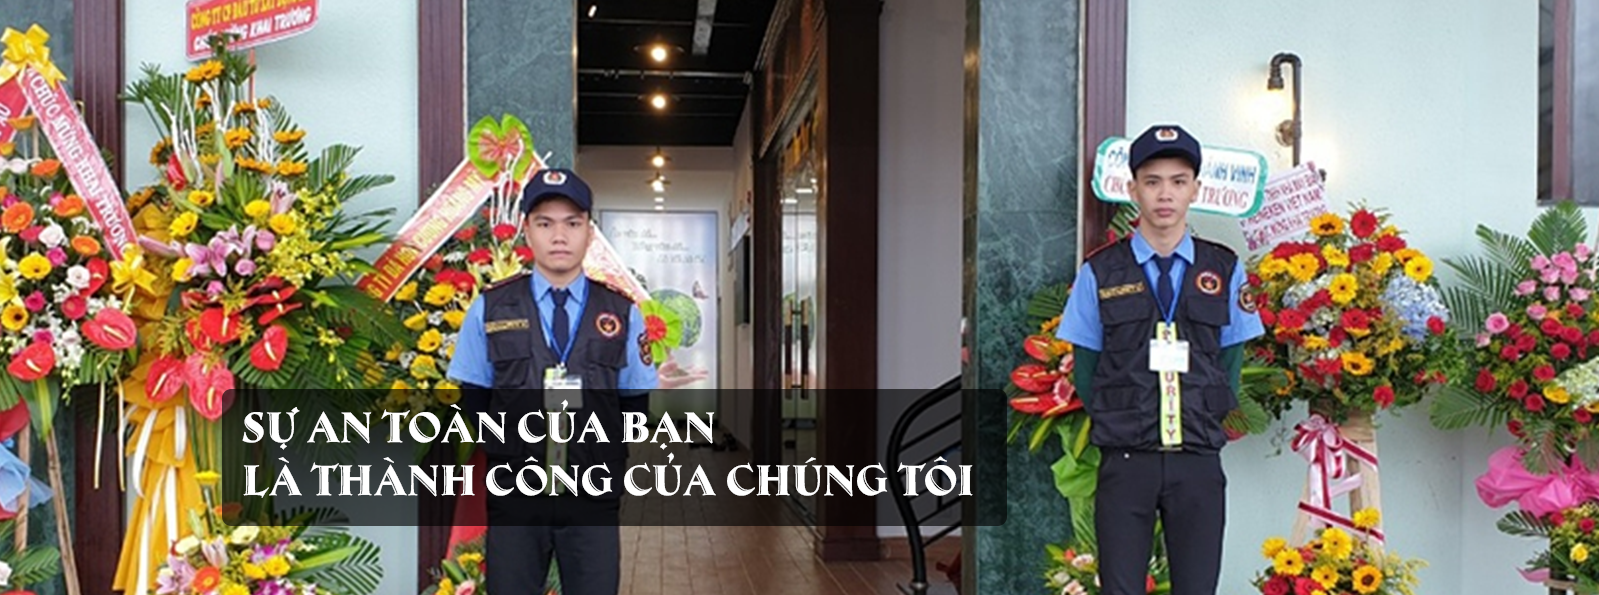 Dịch vụ bảo vệ sự kiện tại Đà Nẵng đảm bảo chất lượng 